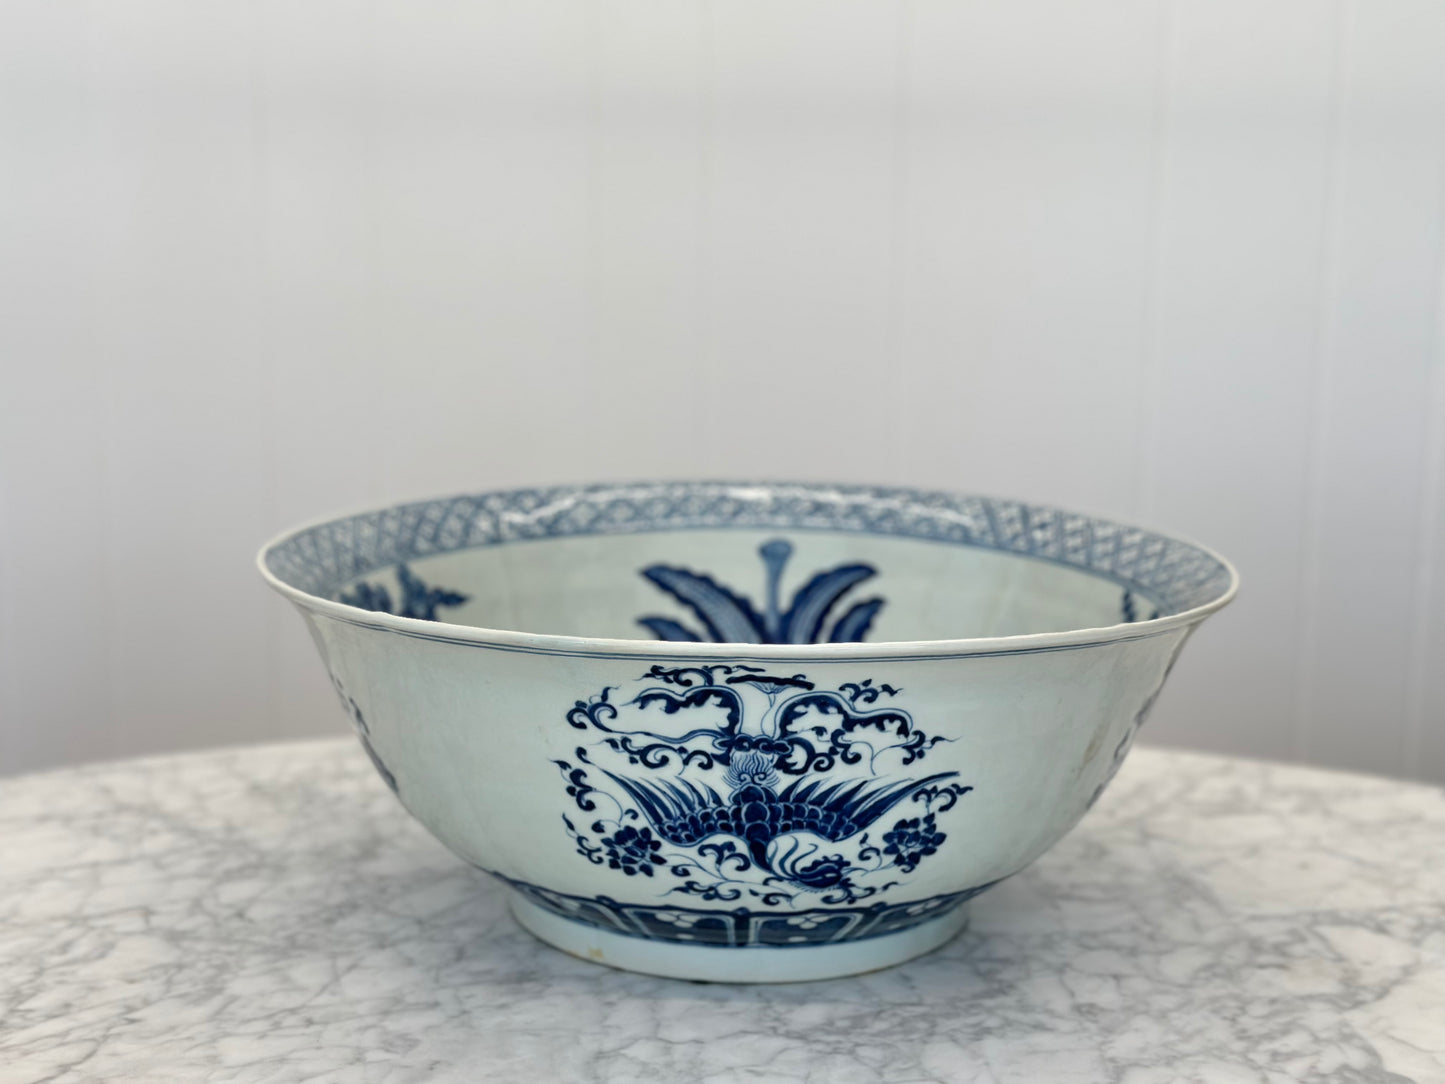 One of a Kind - Antique Blue Porcelain Bowl, 16" d x 16" w x 6.5" t